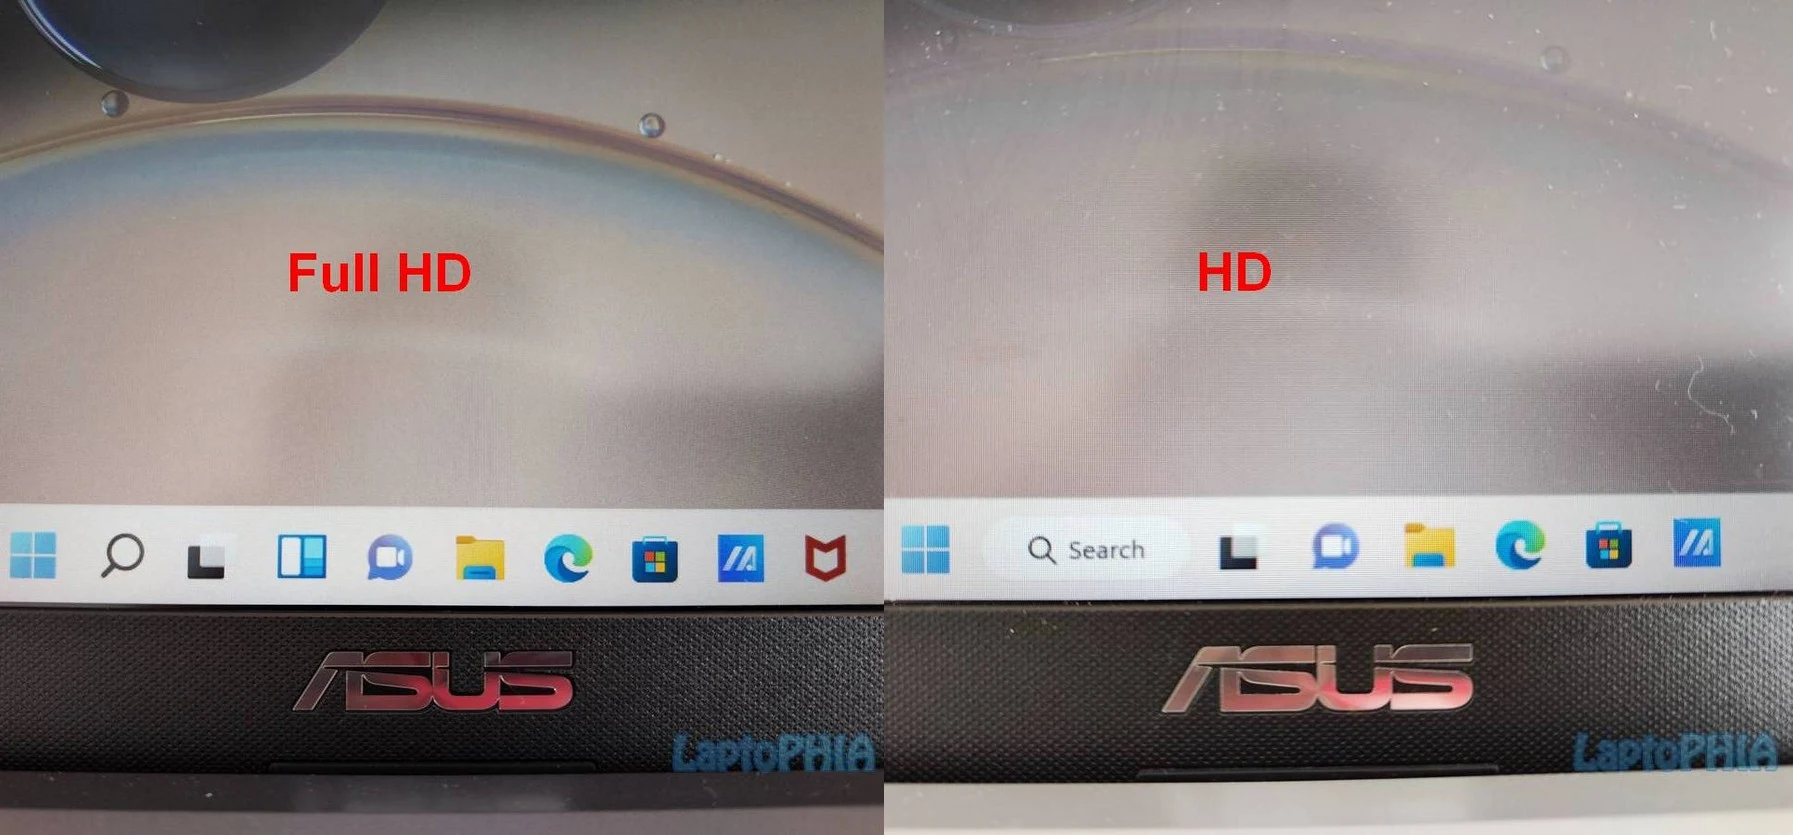 Laptop Layar Full HD vs HD, Pilih Mana? Wajib Baca Sebelum Beli!